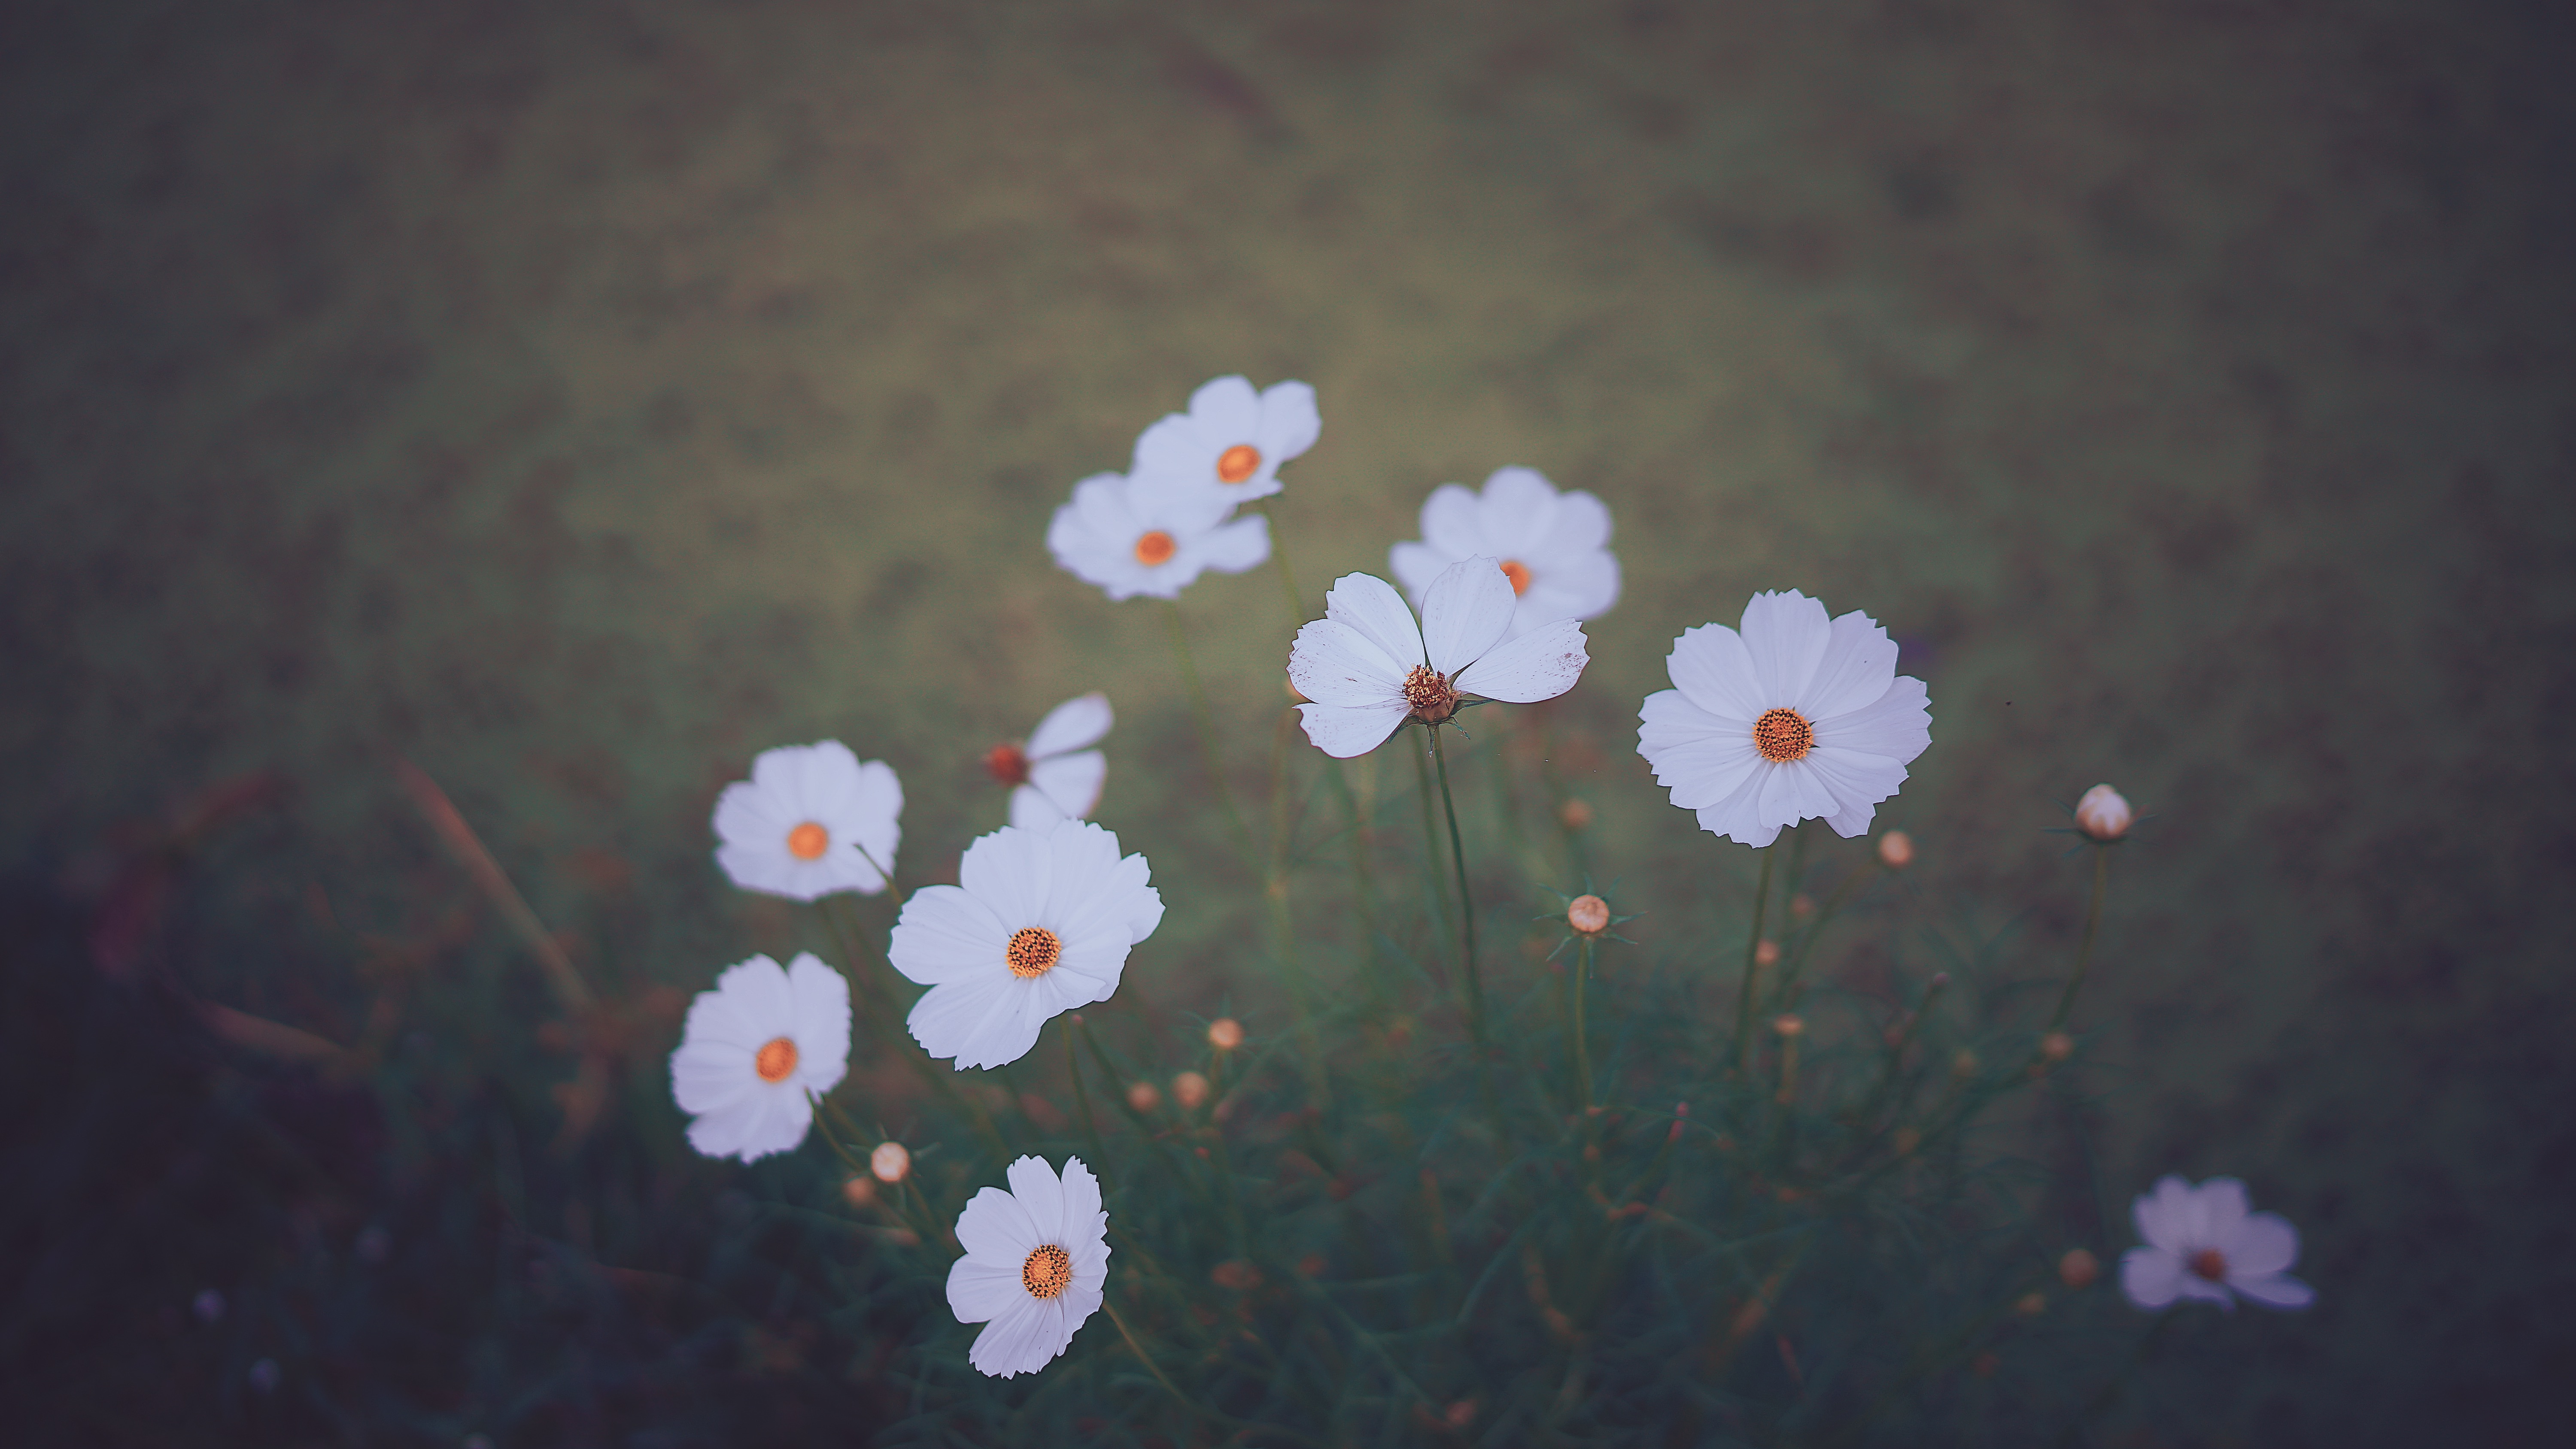 wildflowers, flowers, blur, smooth, kosmeya, cosmos